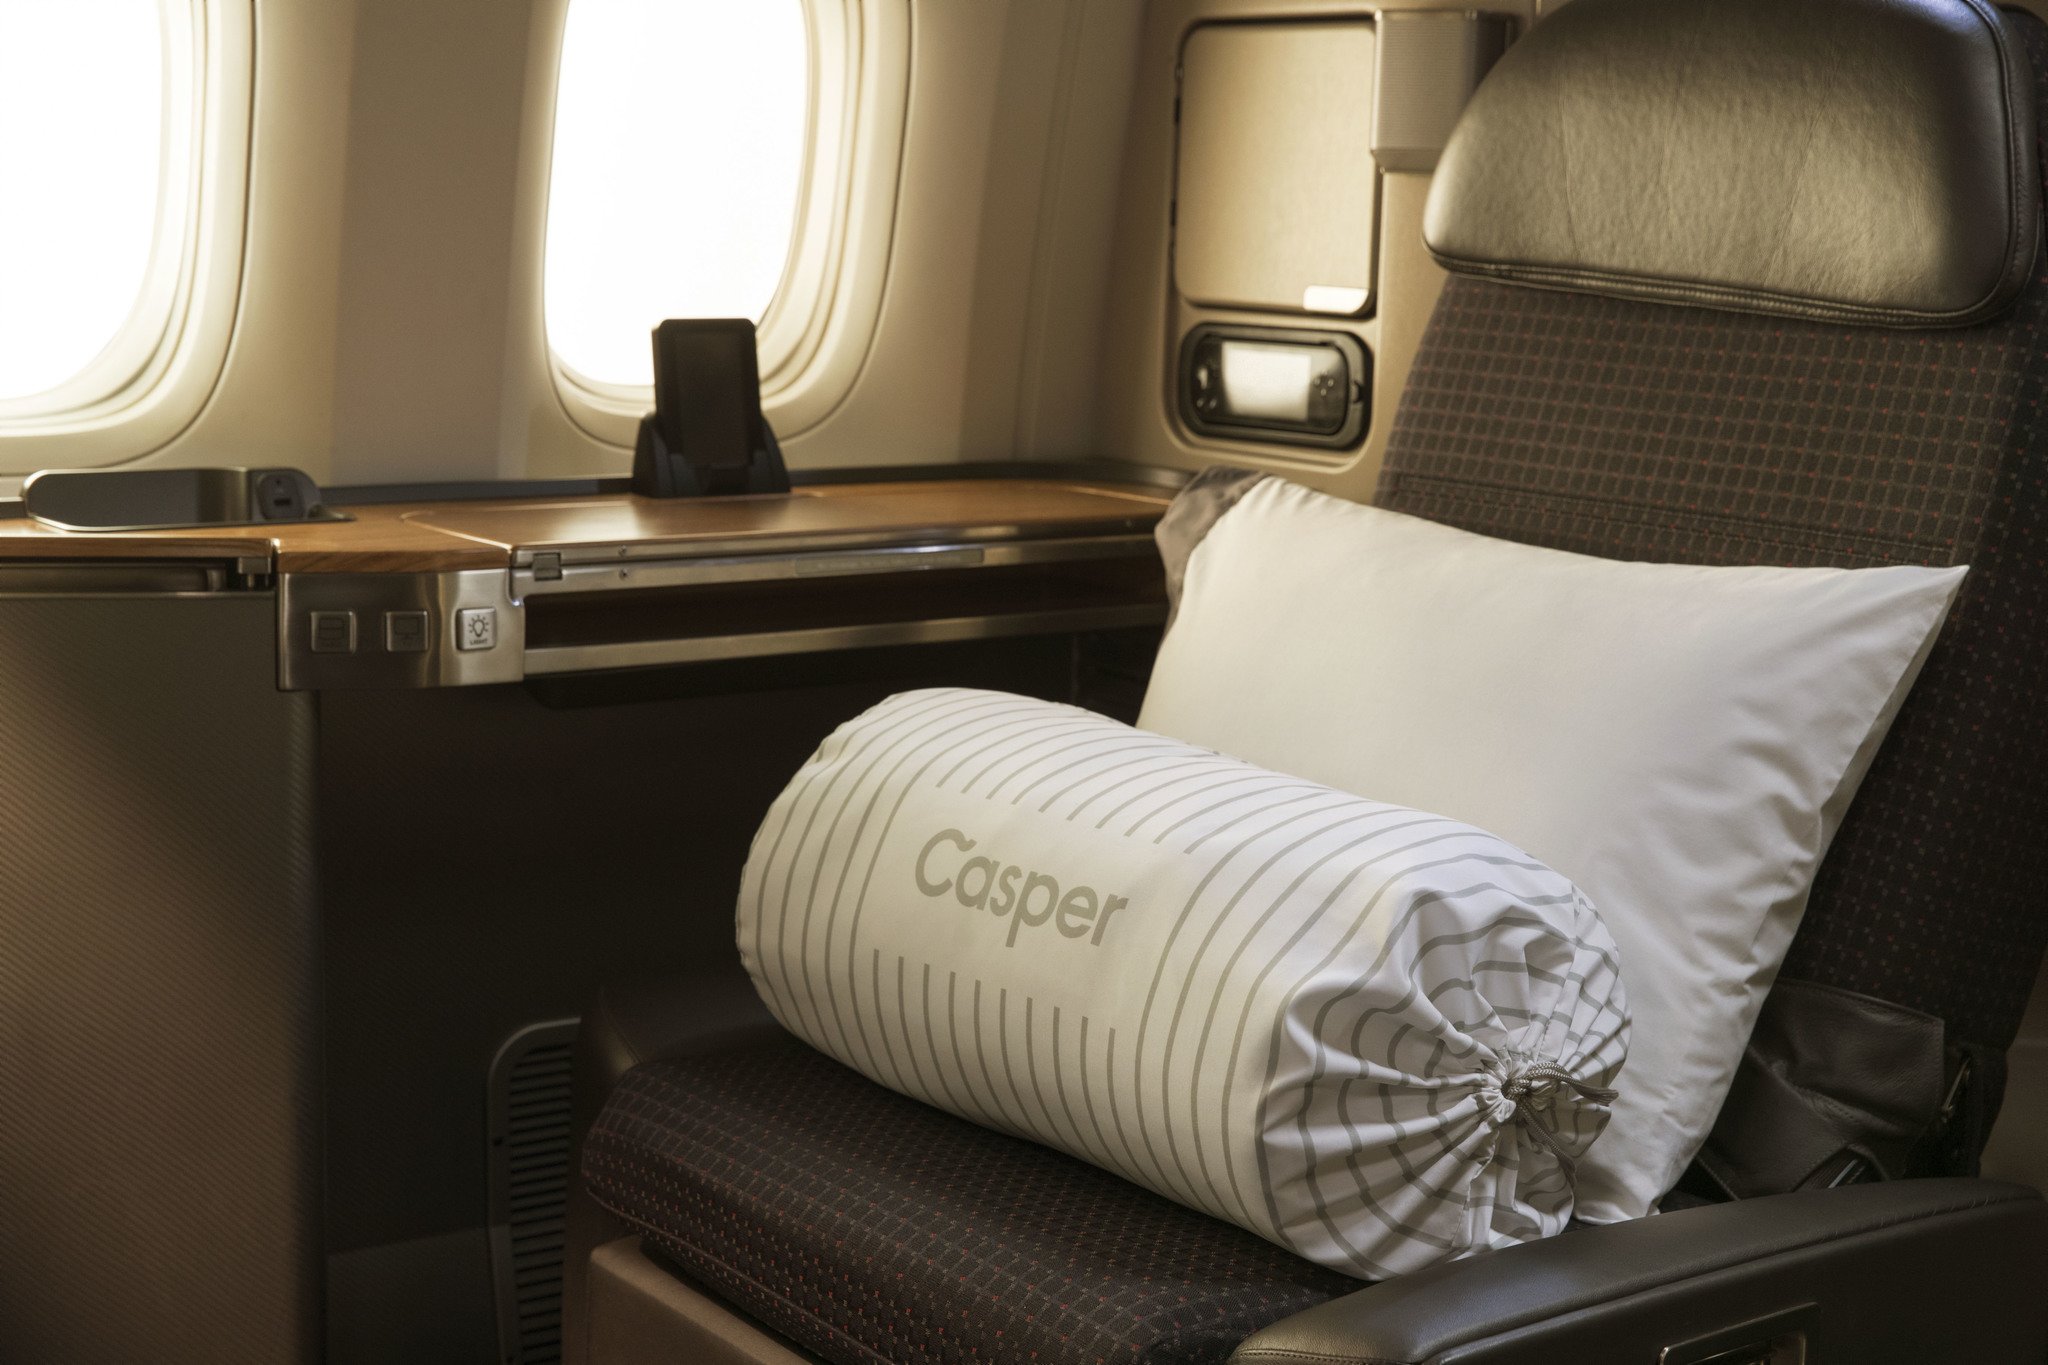 Casper and American Air Offer Better Sleep at 30 Thousand Feet